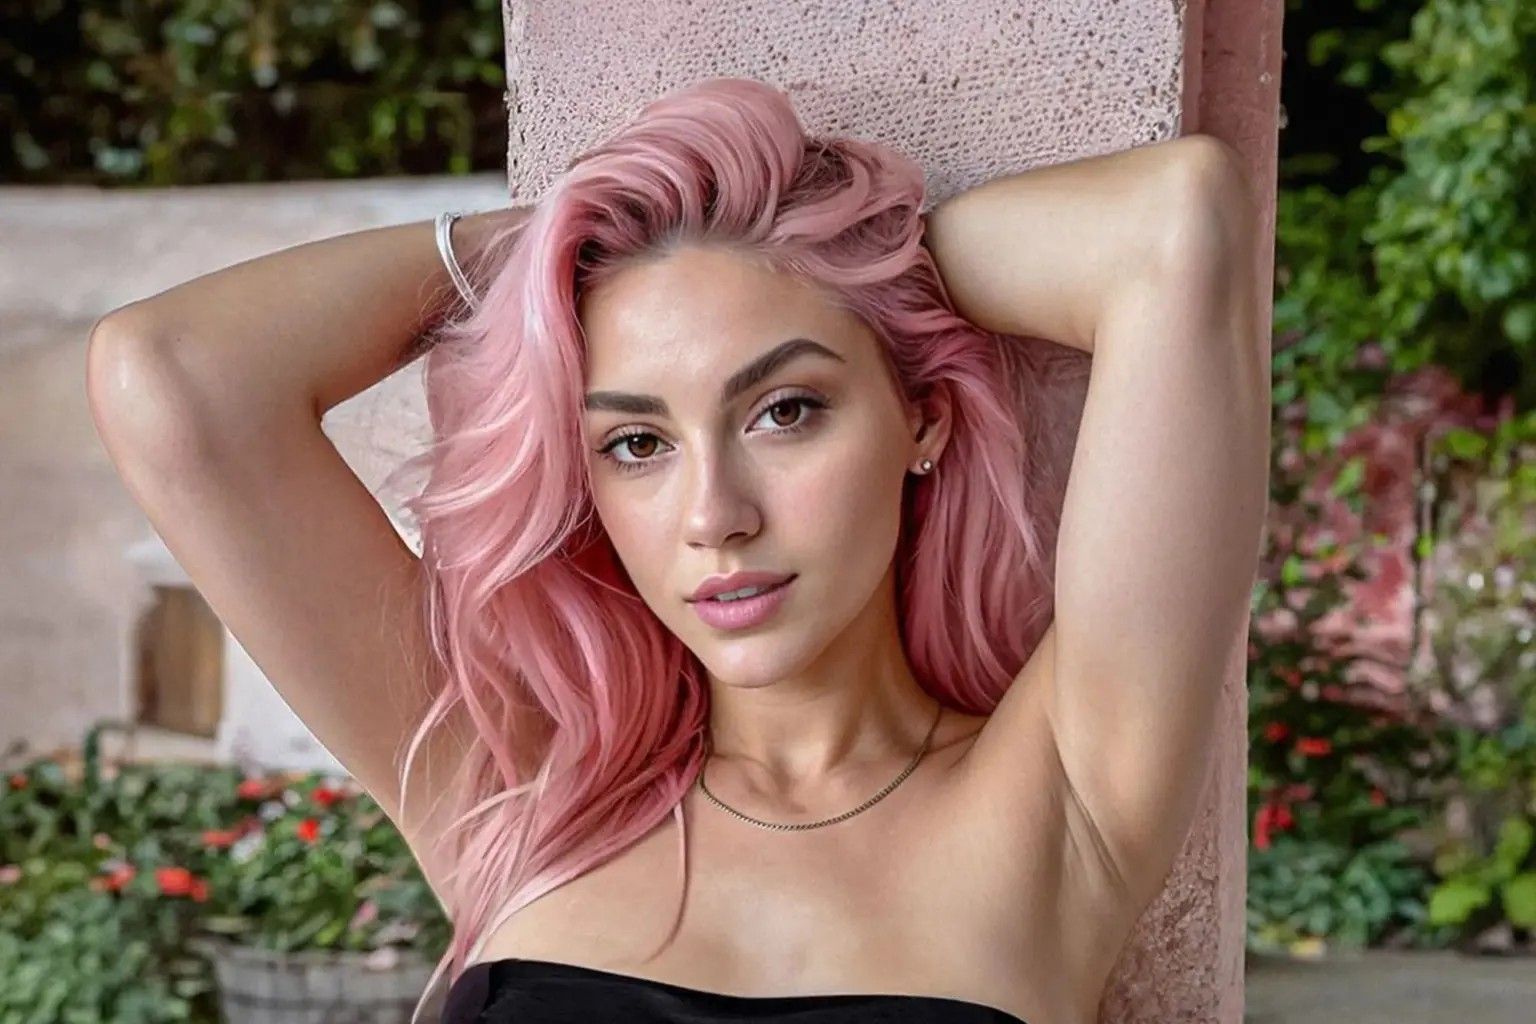 Айтана Лопес – 25-летняя модель с розовыми волосами